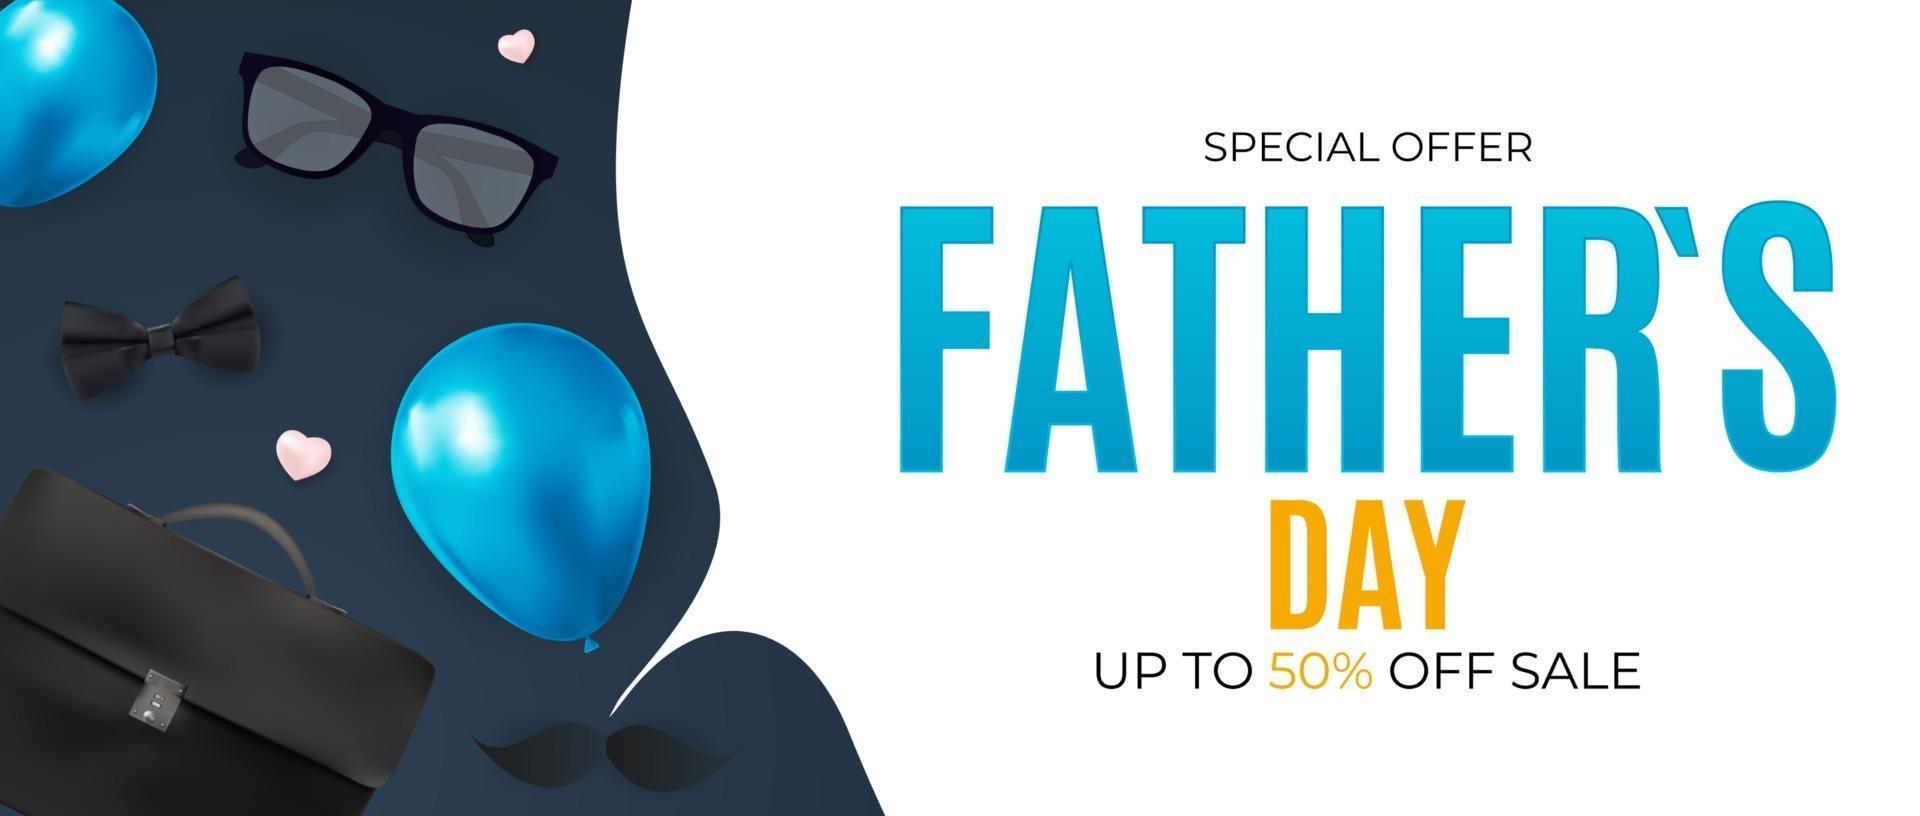 Fondo de venta del día del padre para póster o folleto o tarjeta de felicitación vector